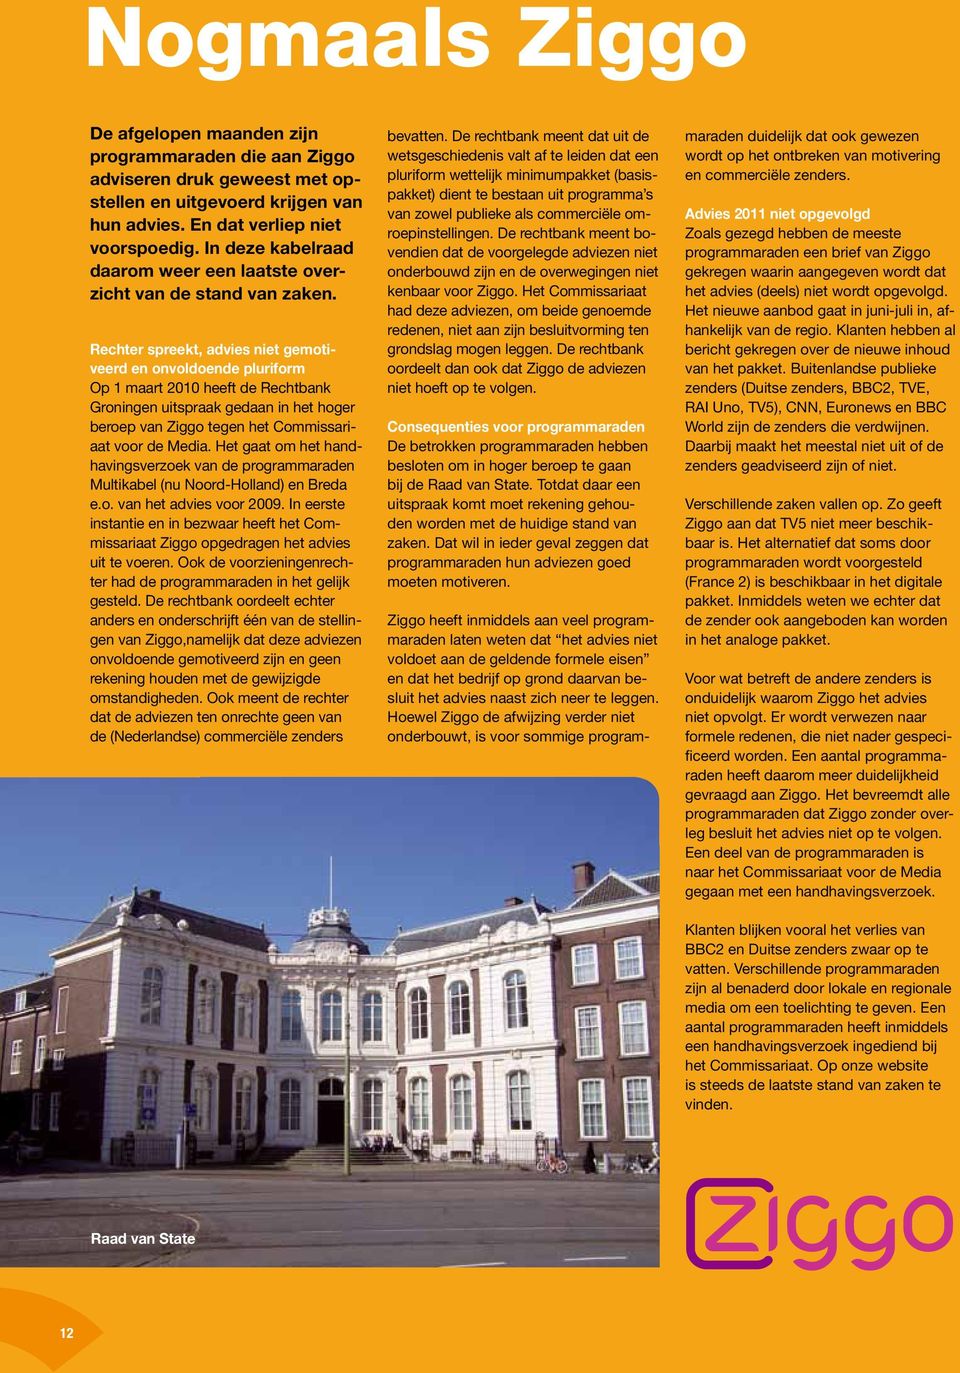 Rechter spreekt, advies niet gemotiveerd en onvoldoende pluriform Op 1 maart 2010 heeft de Rechtbank Groningen uitspraak gedaan in het hoger beroep van Ziggo tegen het Commissariaat voor de Media.